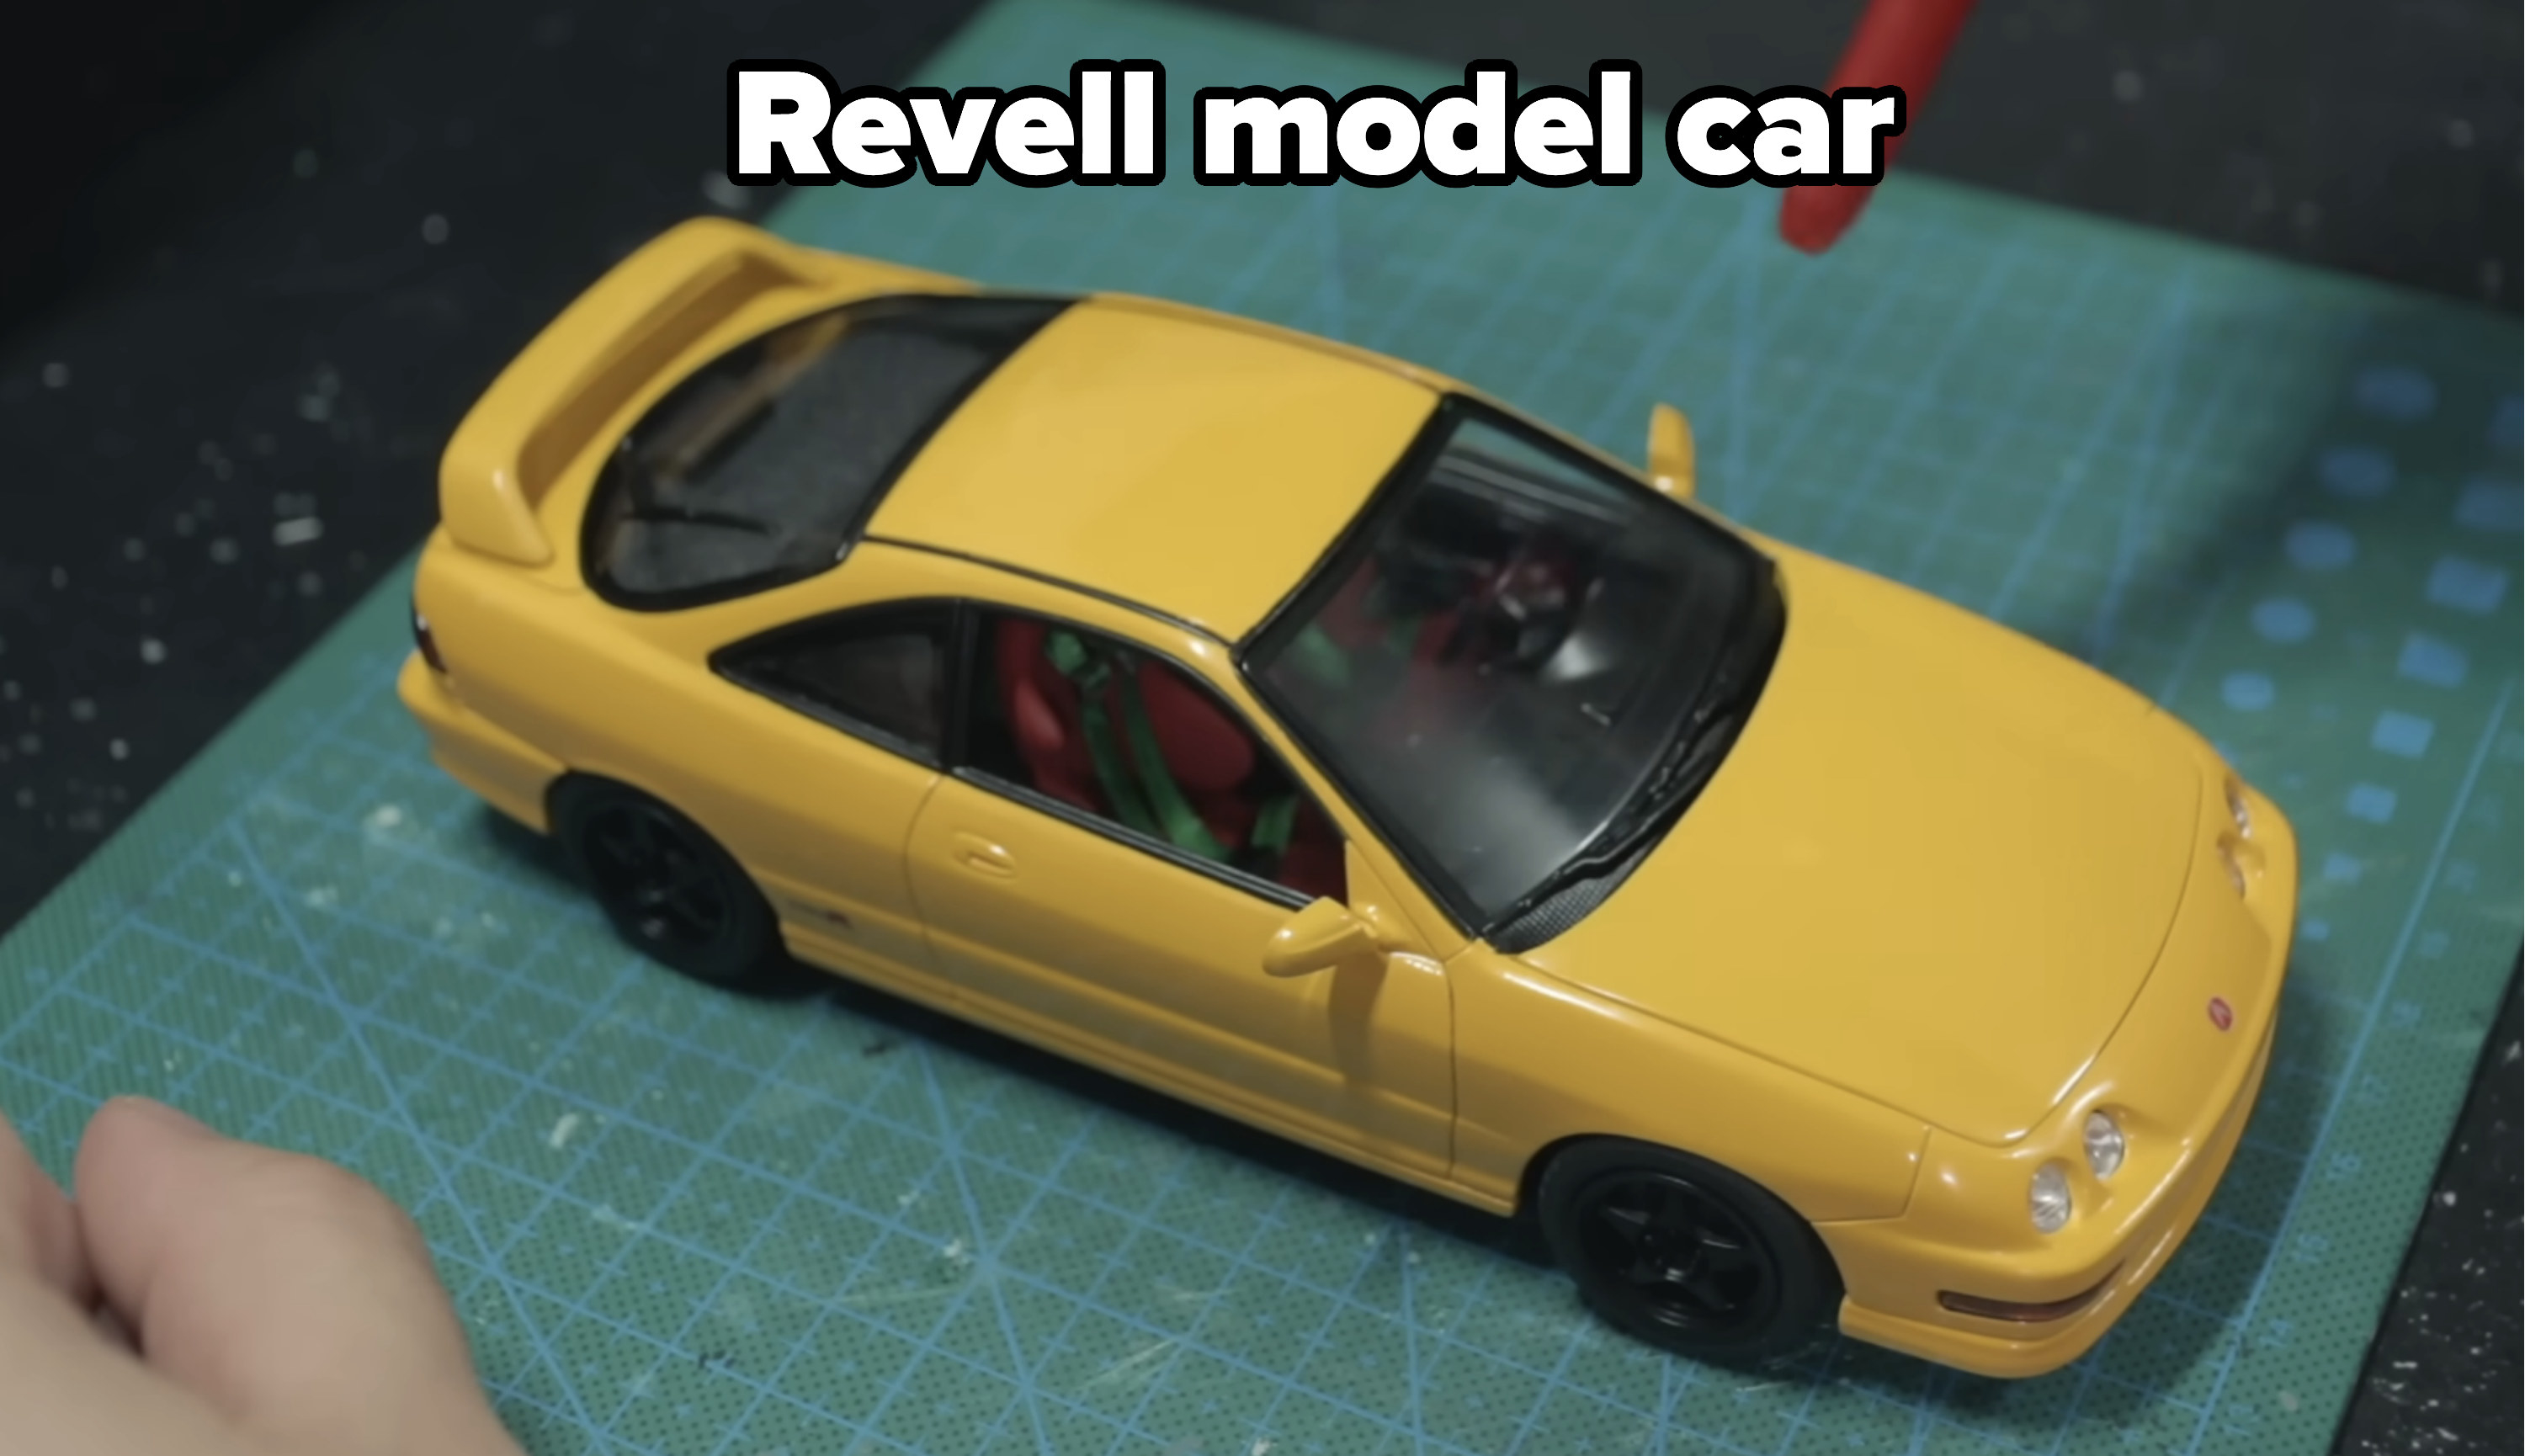 A Revell model car